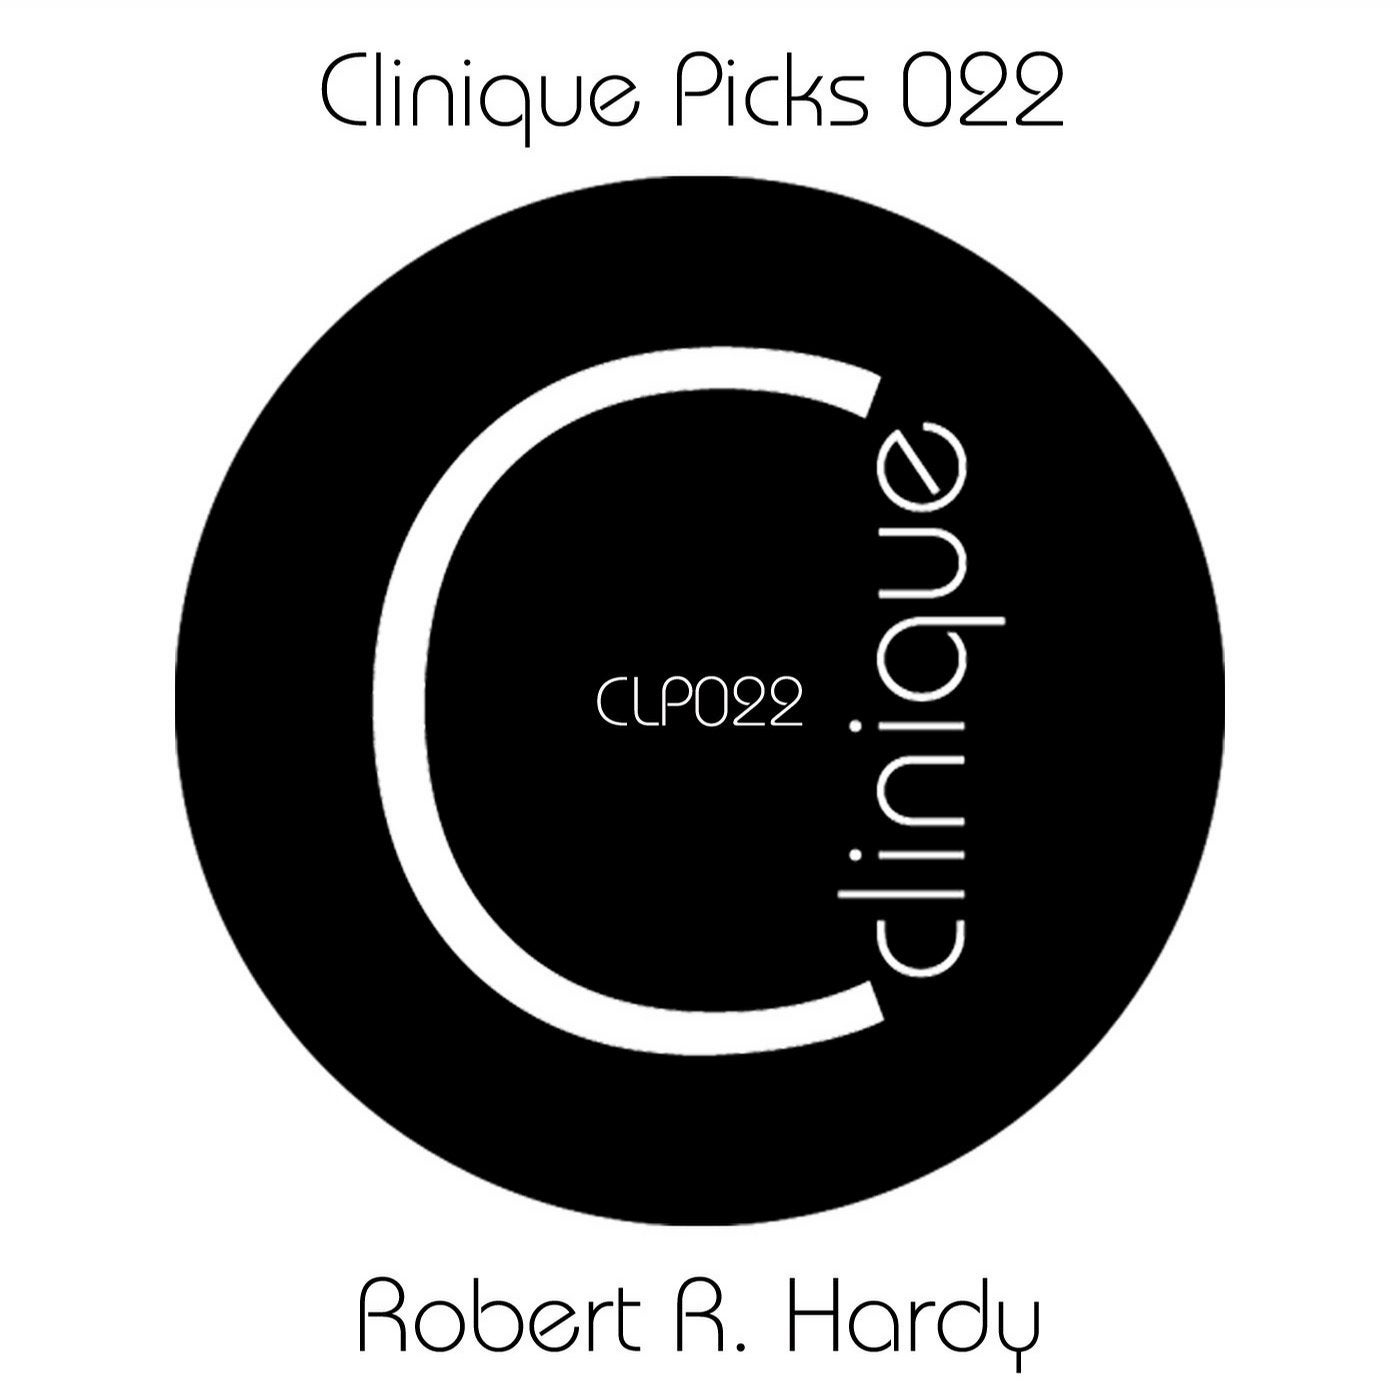 Clinique Picks 022